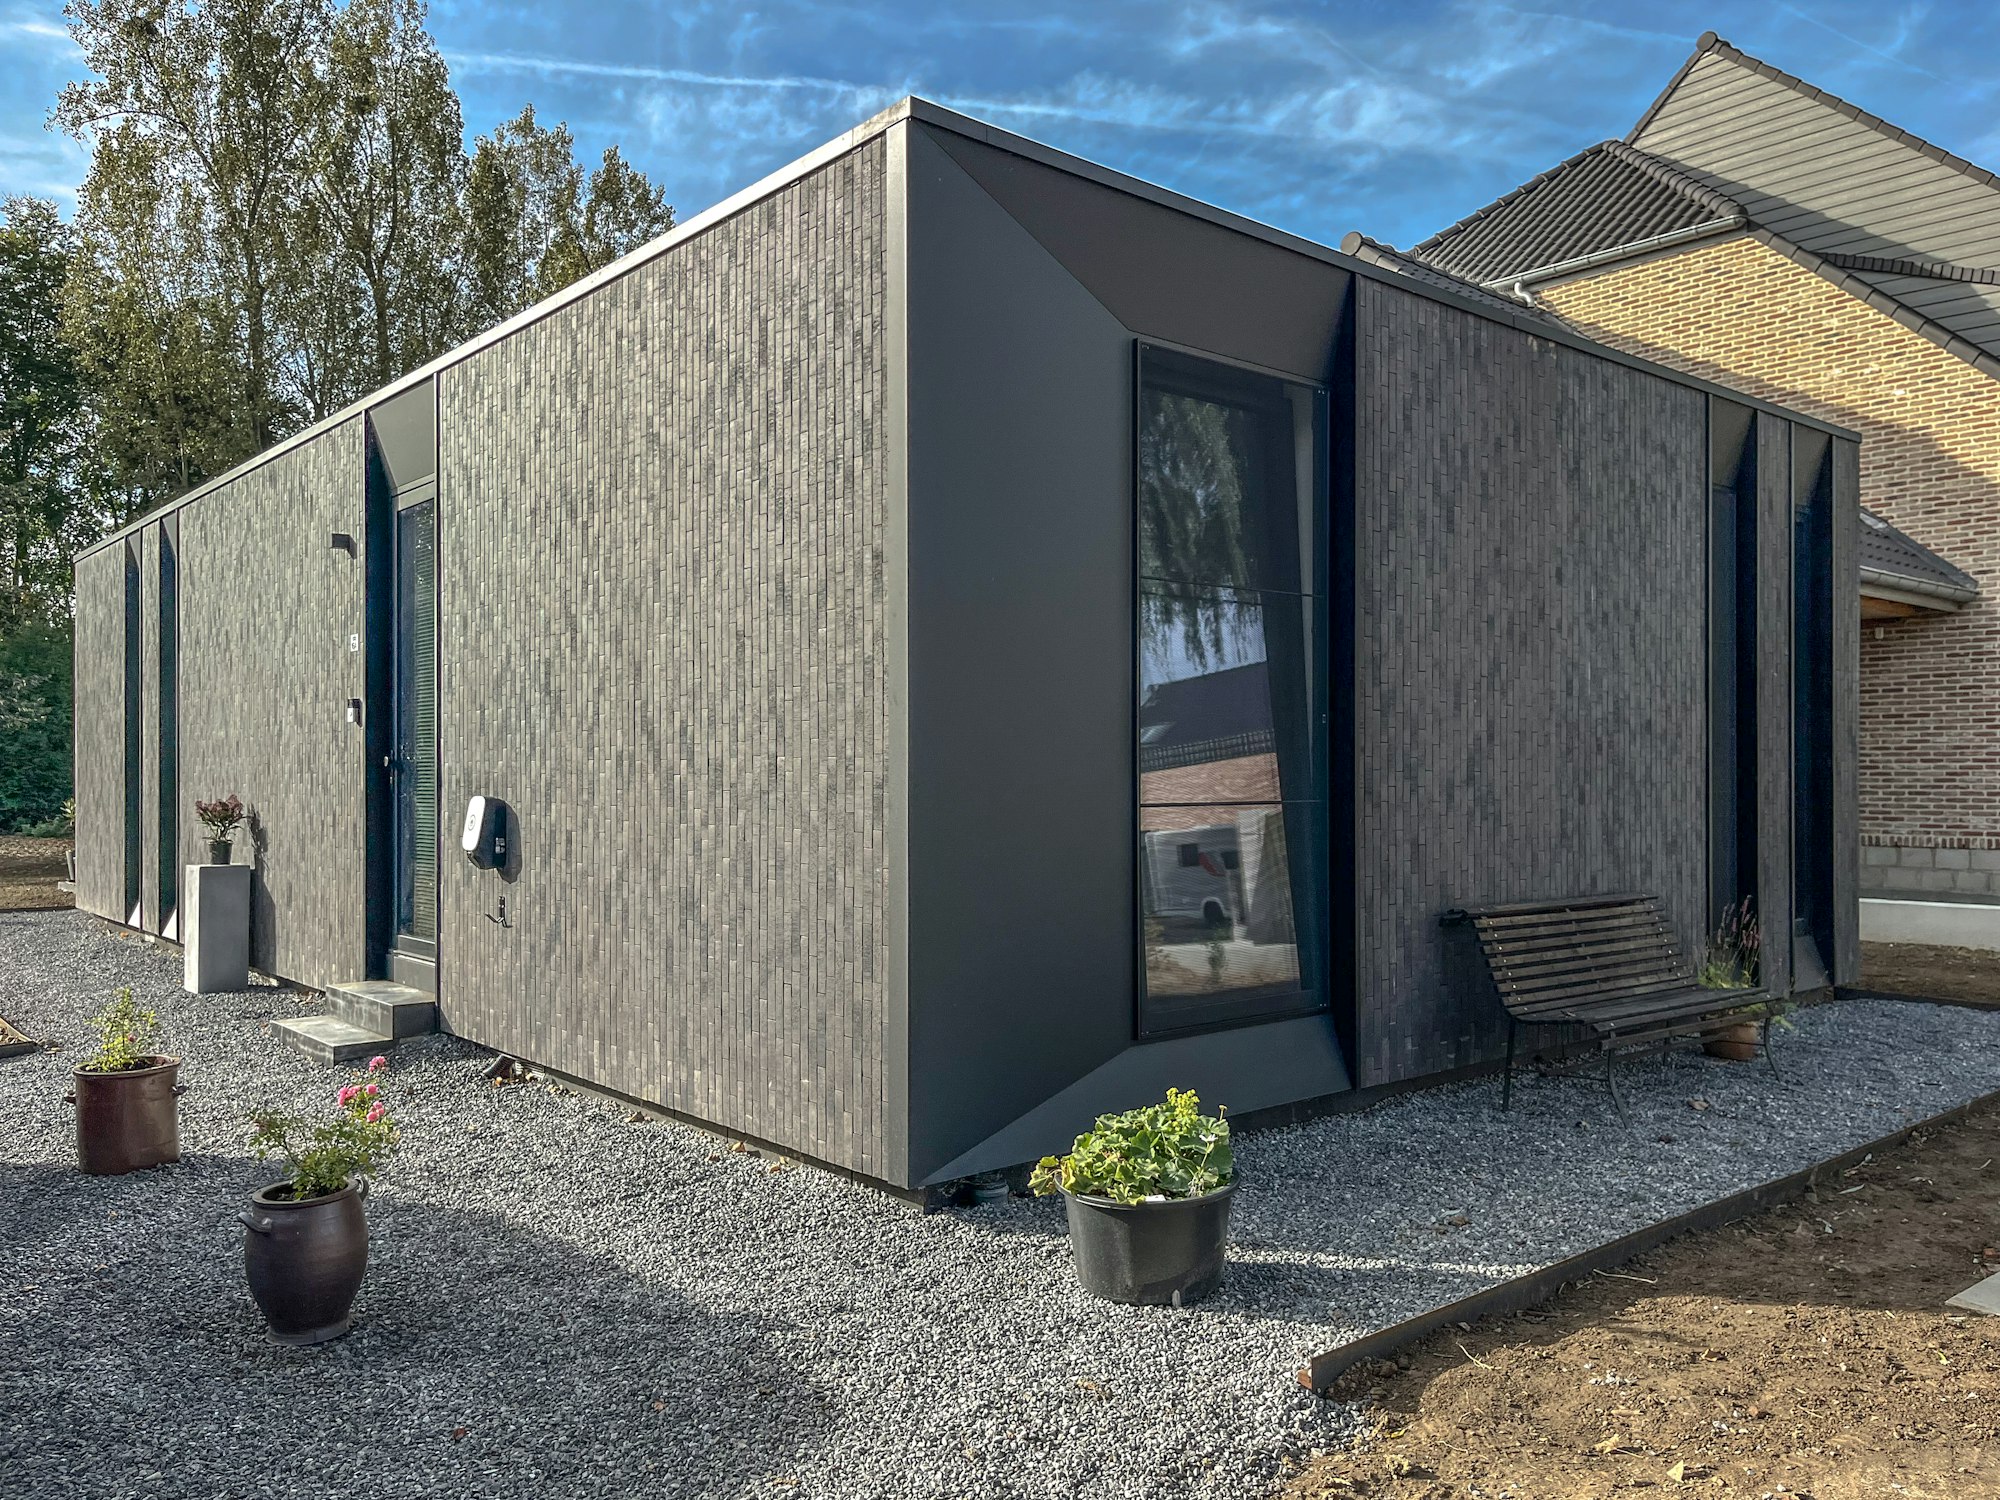 Skilpod #90 — houtskeletbouw bungalow woning met 2 slaapkamers, modern design met zwarte steen